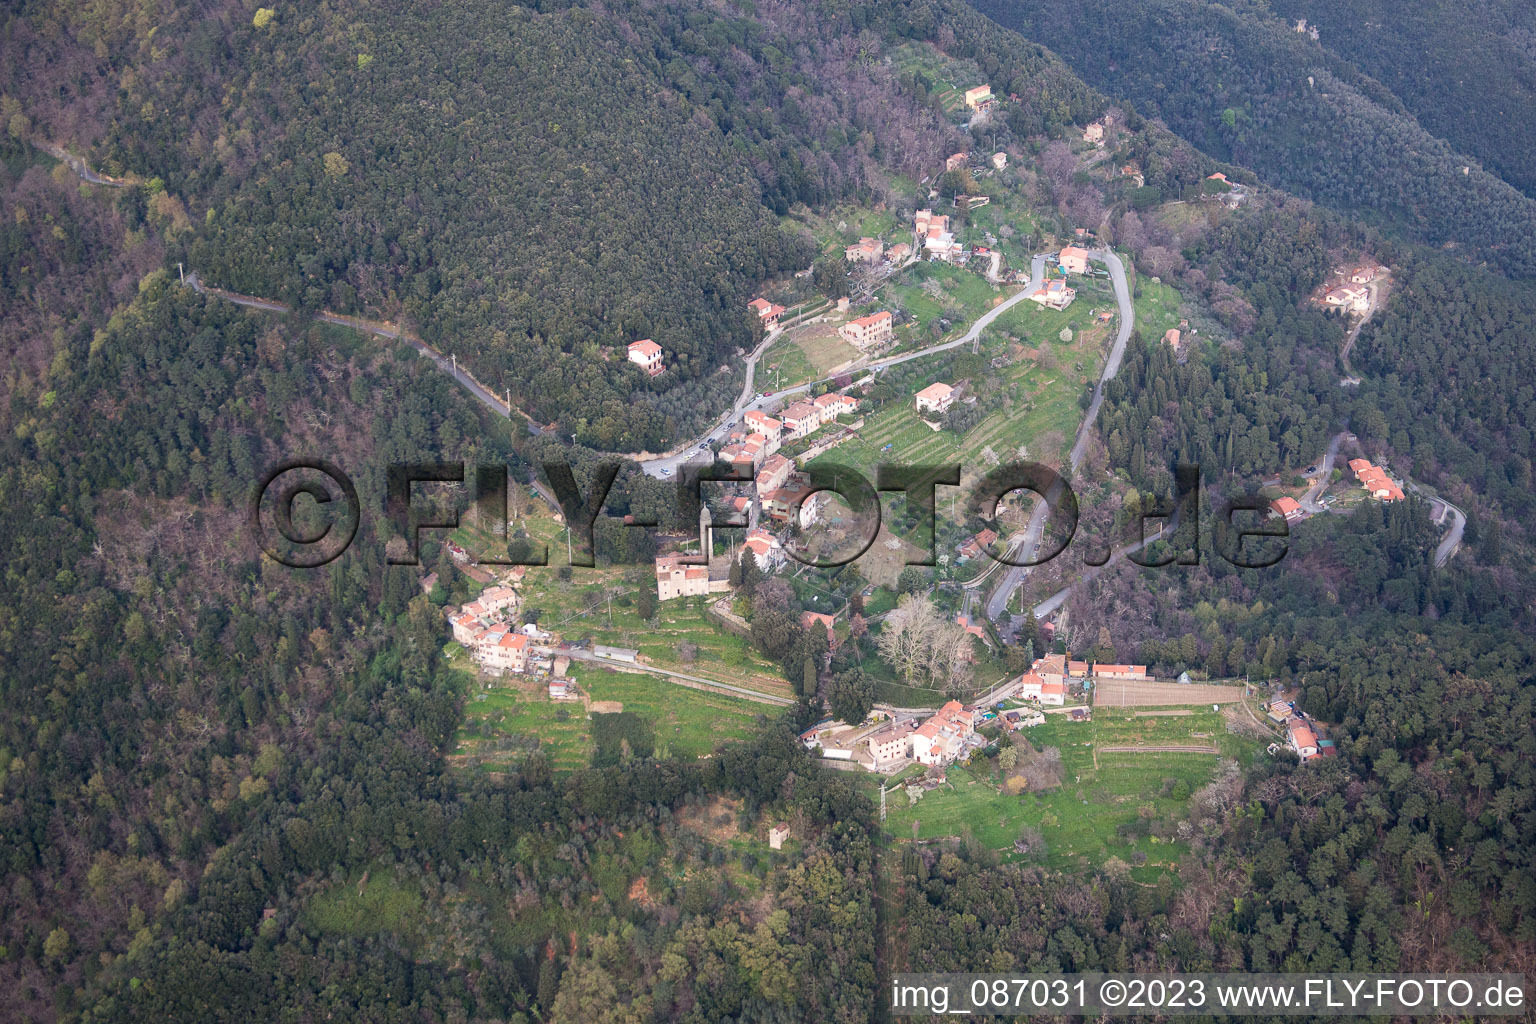 Valdicastello im Bundesland Toscana, Italien von oben gesehen